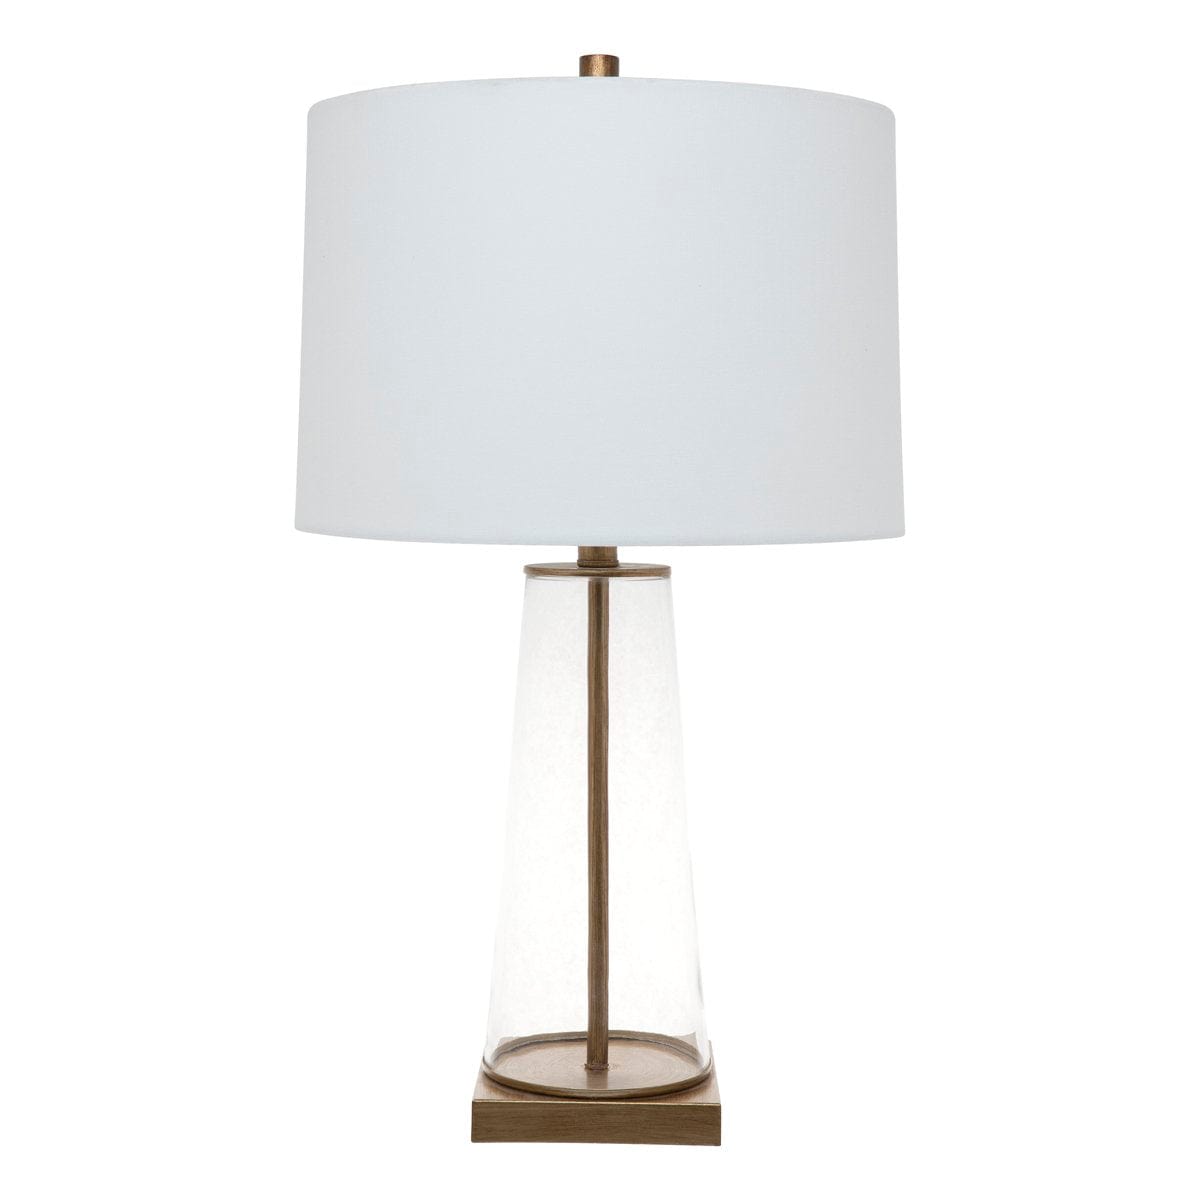 CAFE LIGHTING & LIVING Table Lamp Aspen Table Lamp - White 13309